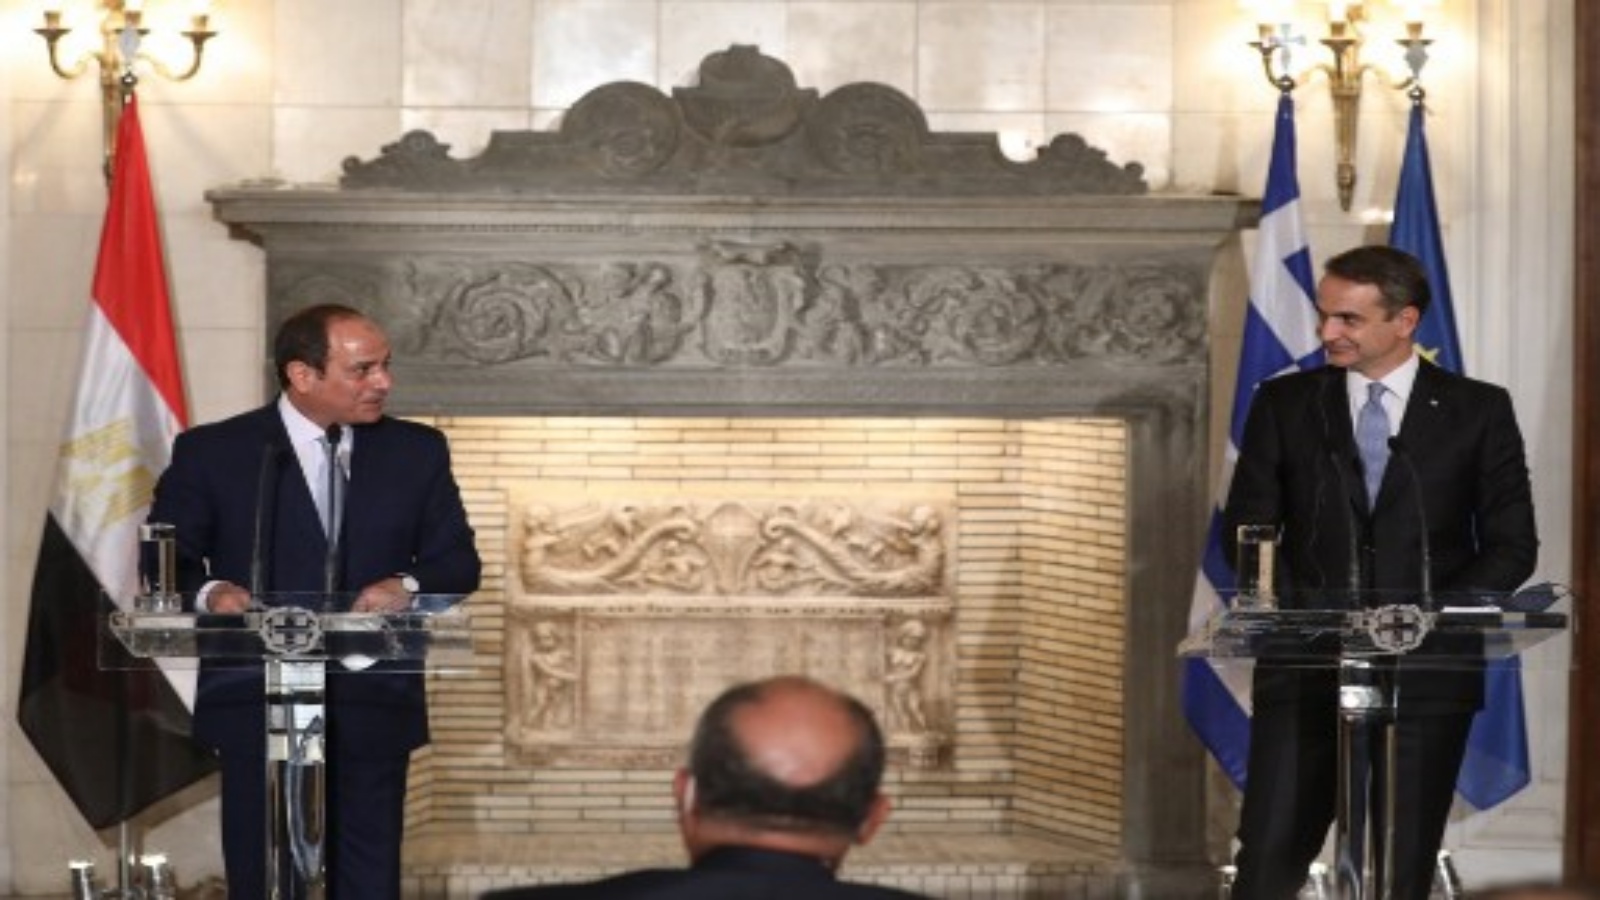 رئيس الوزراء اليوناني كيرياكوس ميتسوتاكيس والرئيس المصري عبد الفتاح السيسي يحضران مؤتمرا صحفيا مشتركا في قصر ماكسيموس بأثينا يوم 11 نوفمبر 2020.